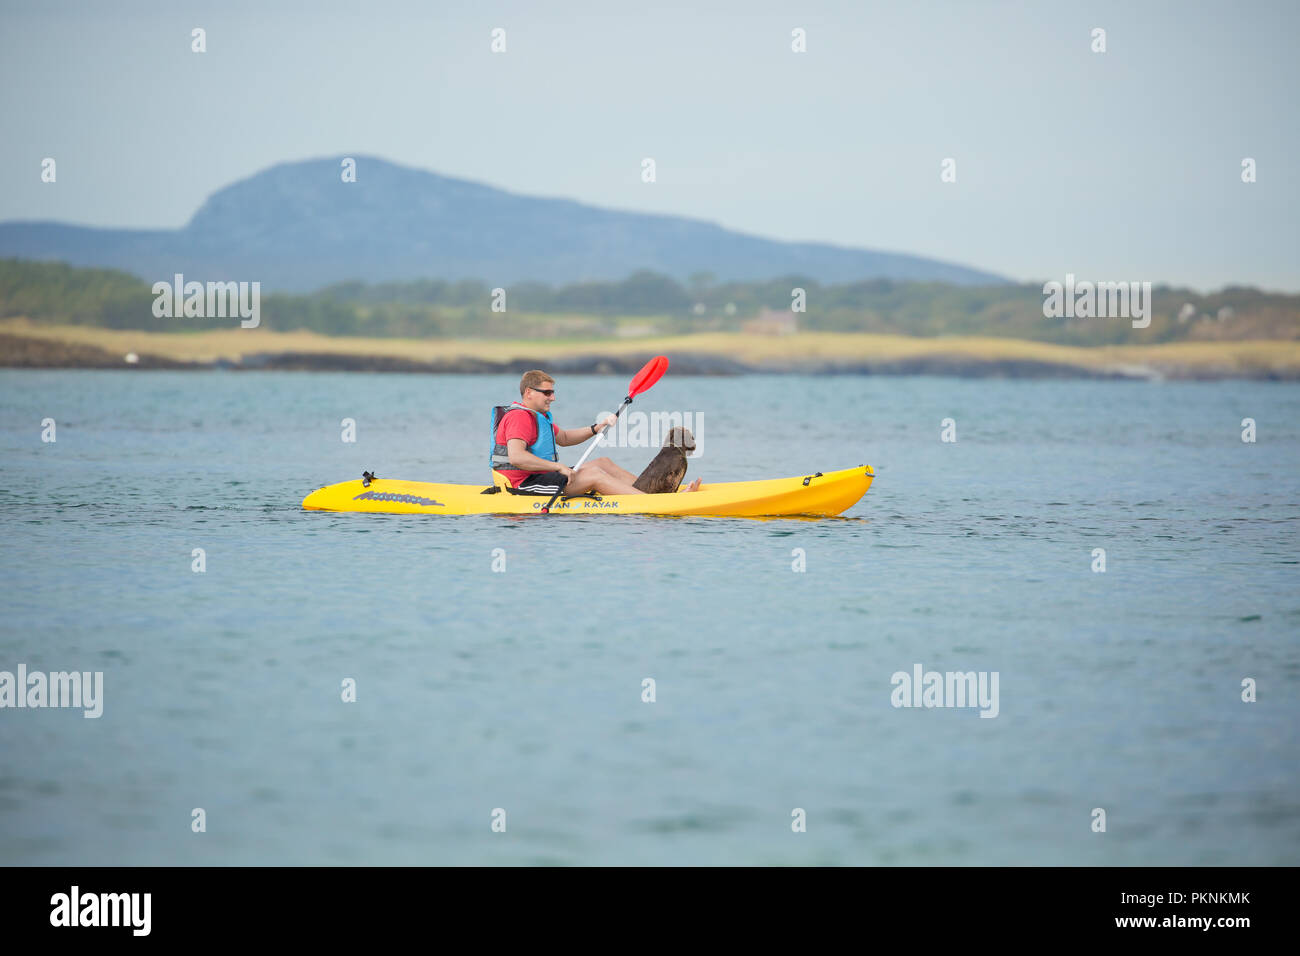 Action-Aufnahme eines Mannes, der mit seinem Hund im gelben Kajak um das Wasser einer Meeresbucht in Anglesey, Nordwales, paddelt. Aufenthalt in Großbritannien. Stockfoto